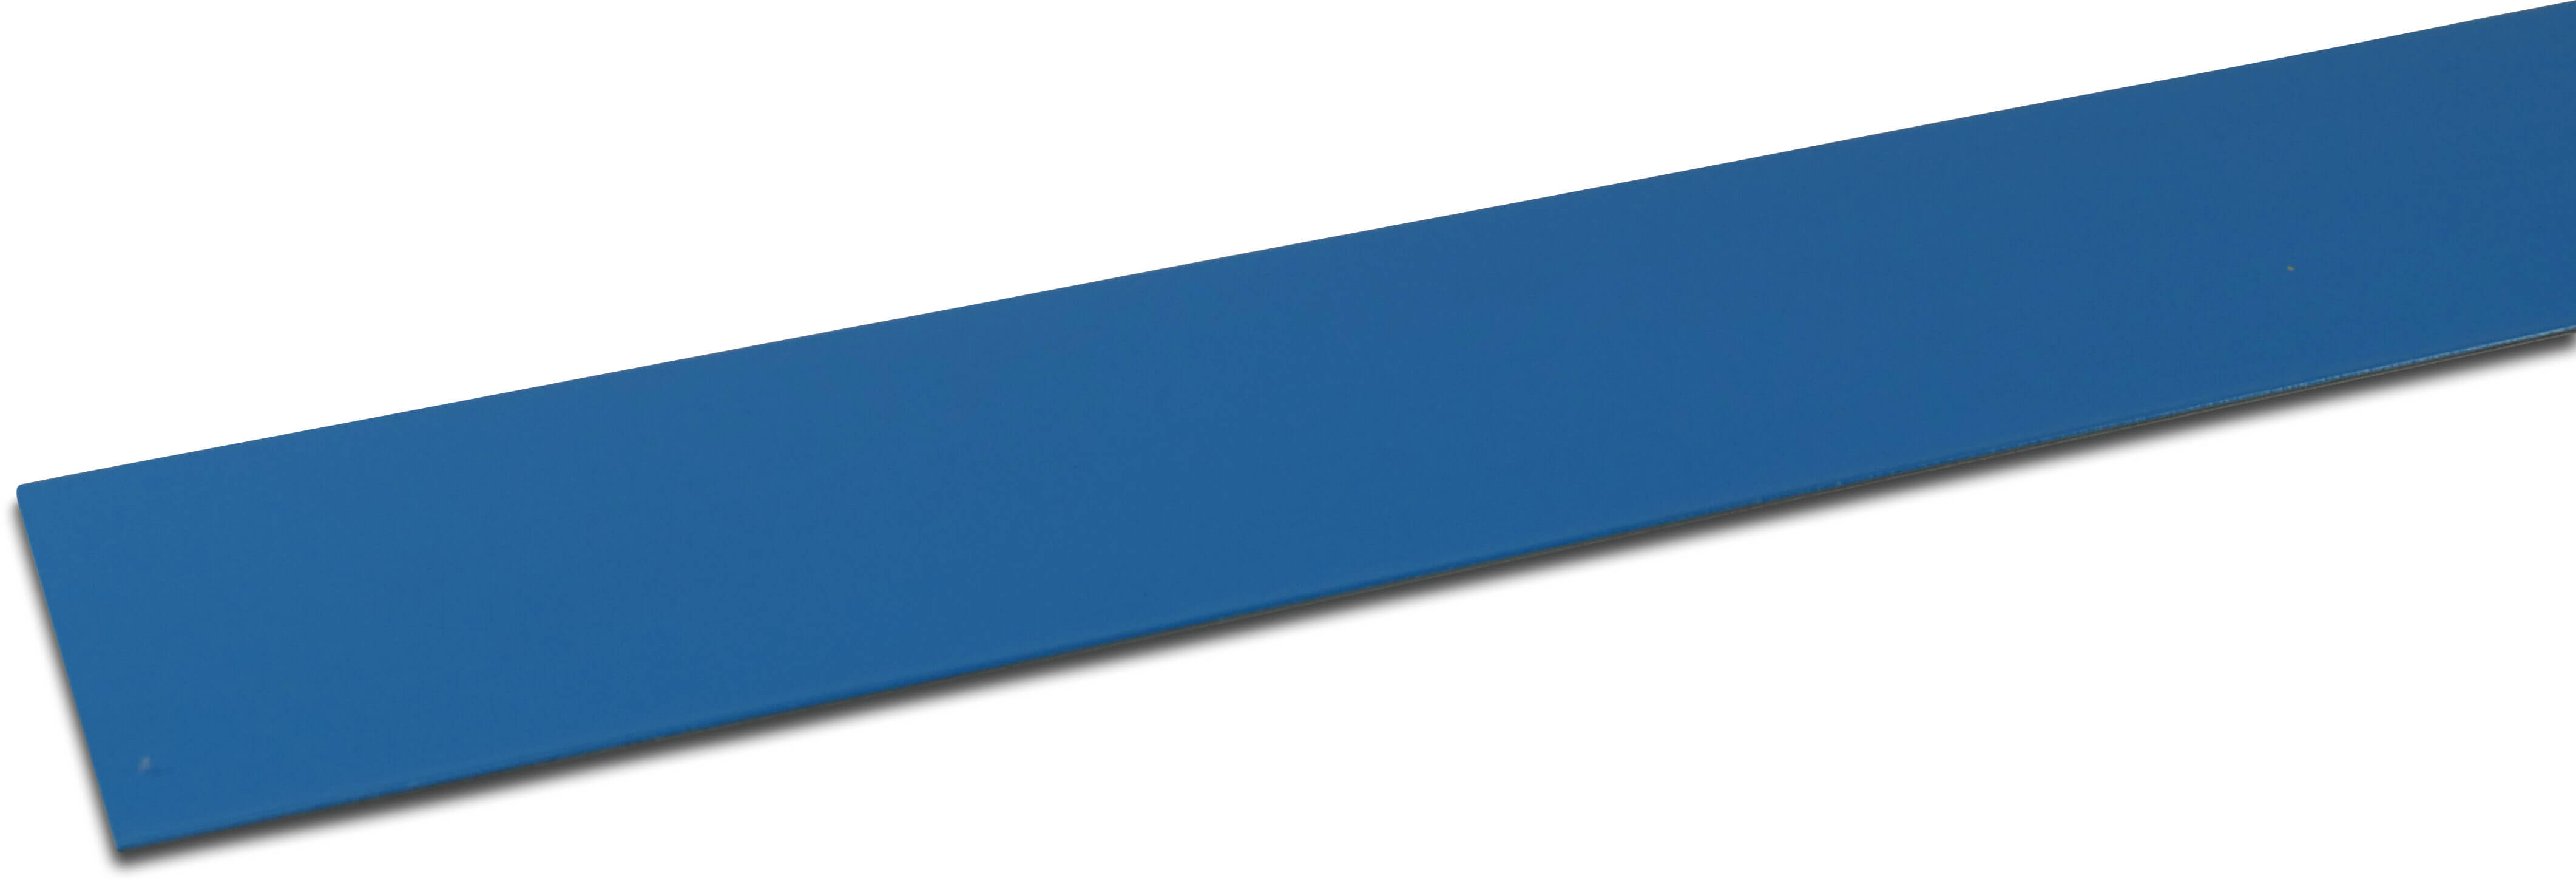 Elbe Profil PVC belagt metal 70 mm x 30 mm x 2000 mm blå 2m type Indvendig vinkel